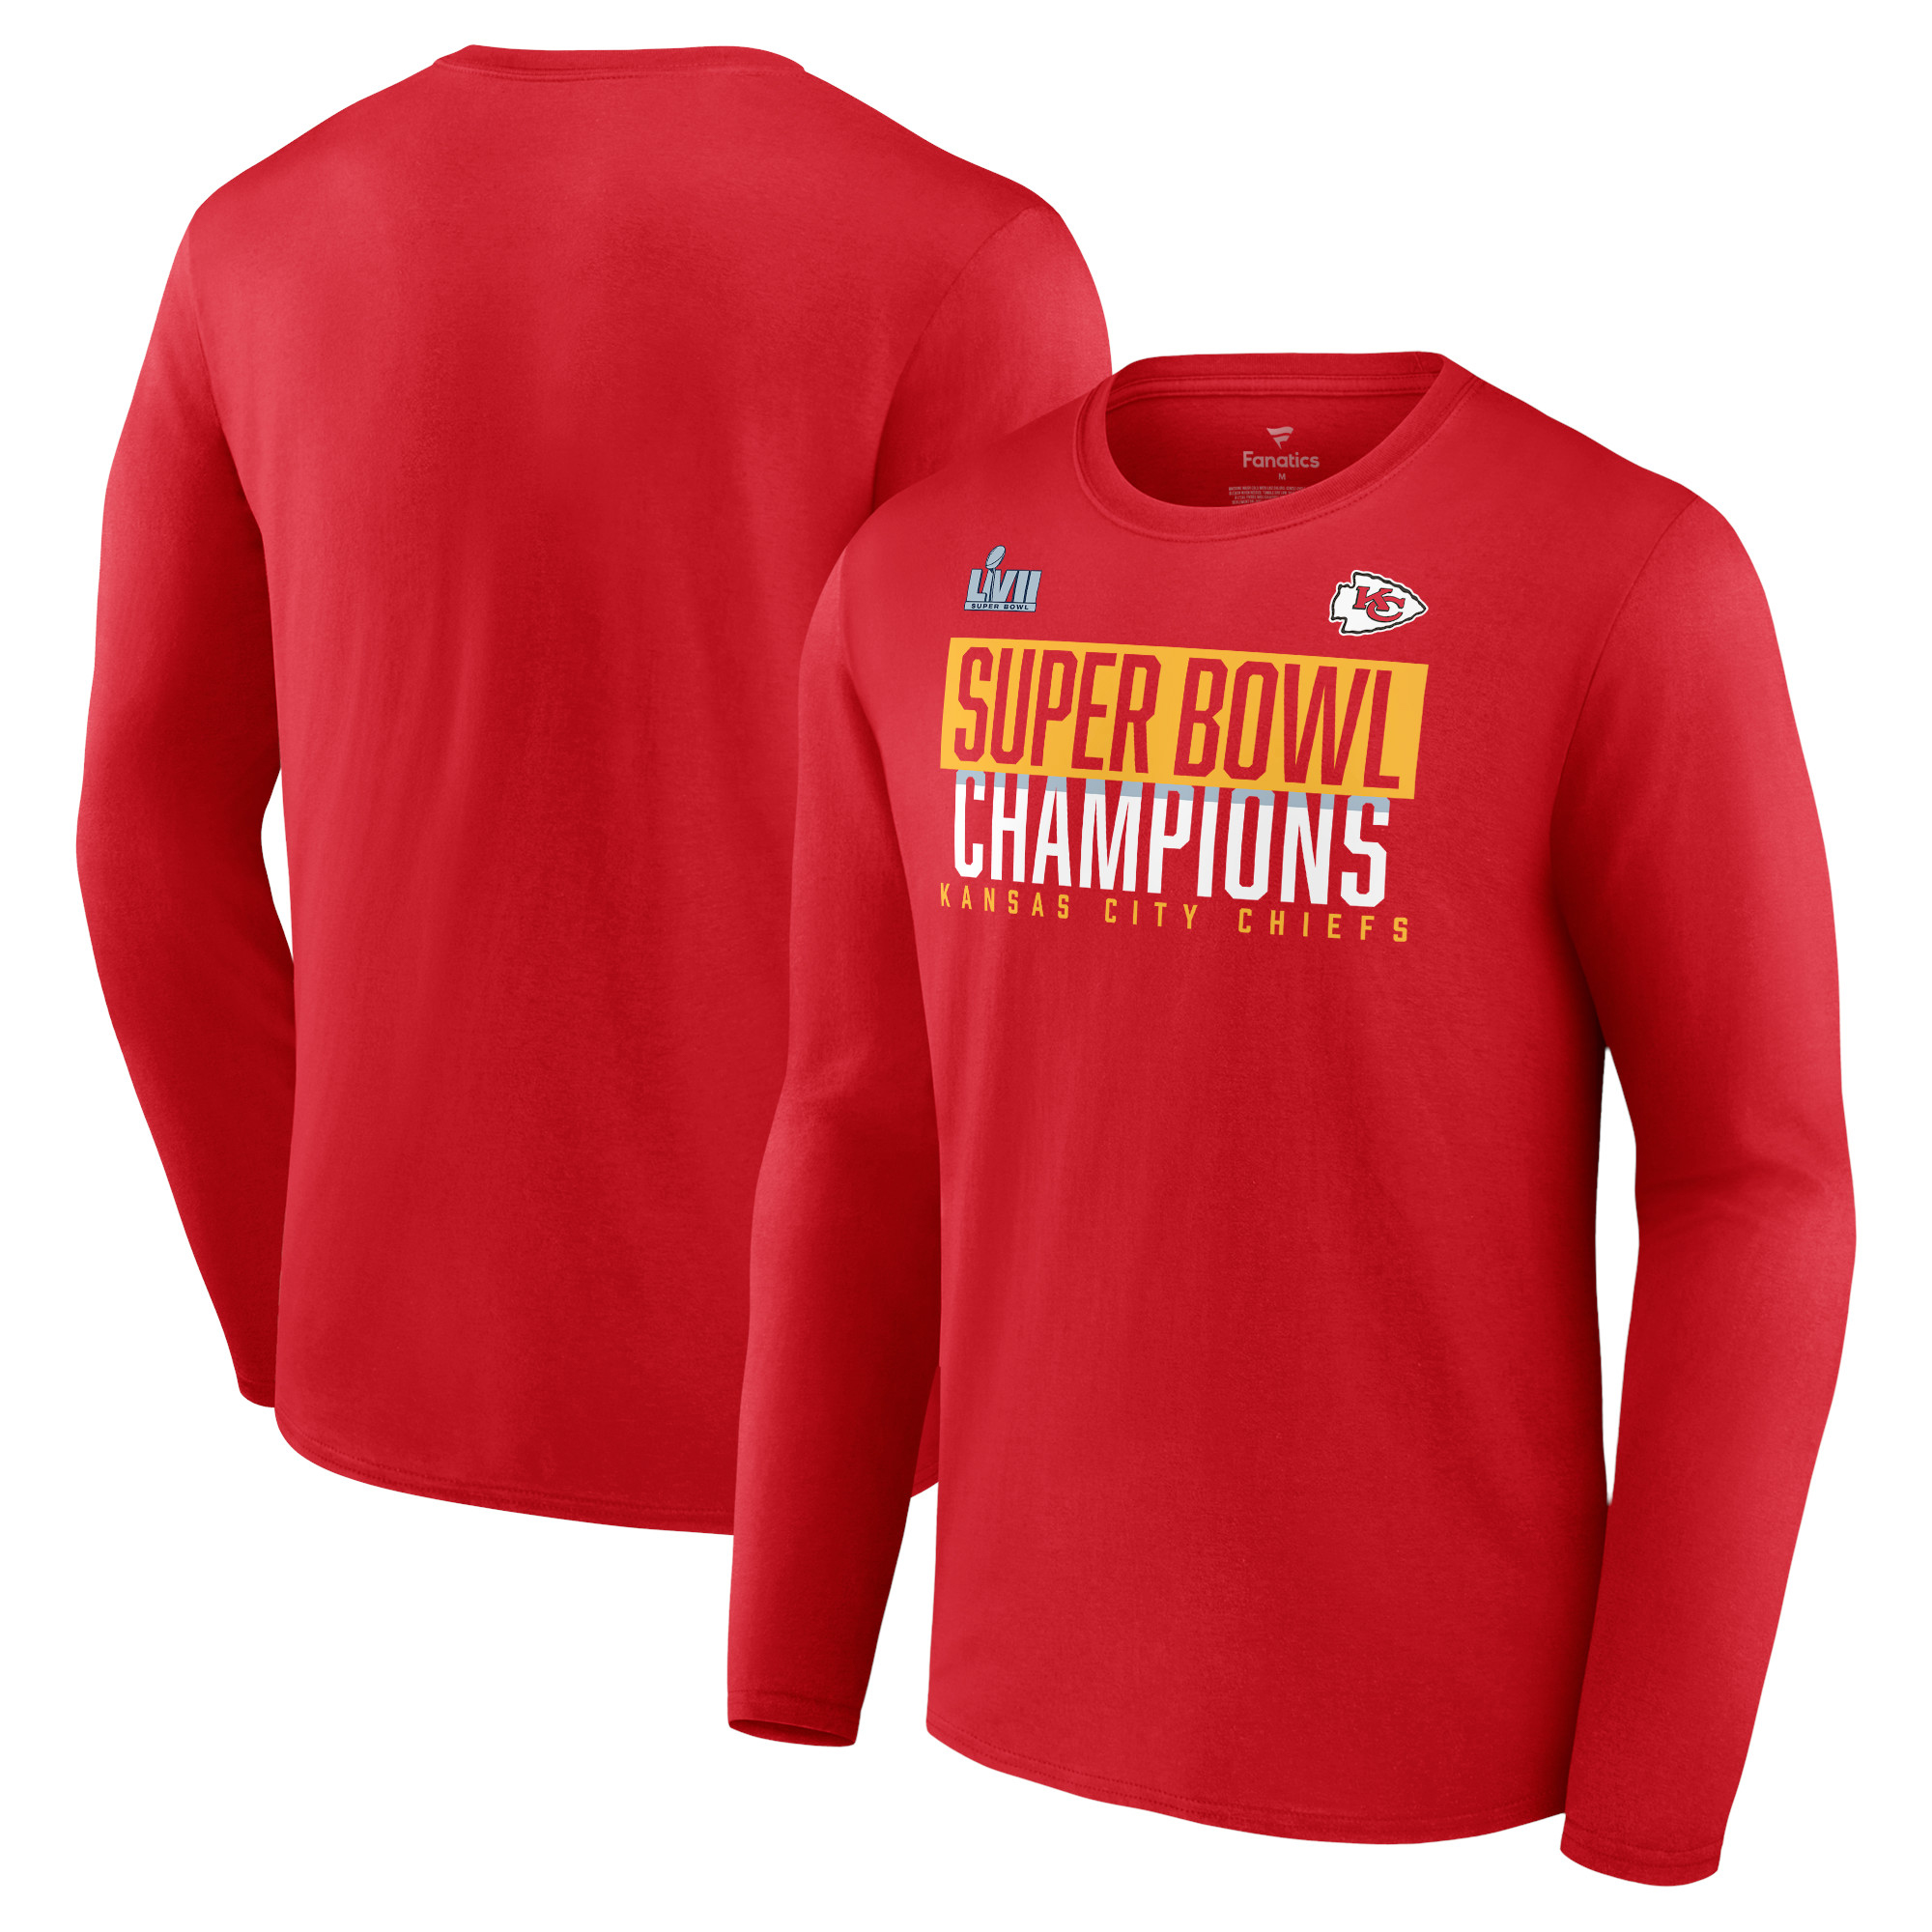 Kansas City Chiefs Super Bowl LVII Champions Fanatics Herren Langarm-T-Shirt mit Schaumstofffingern, Rot